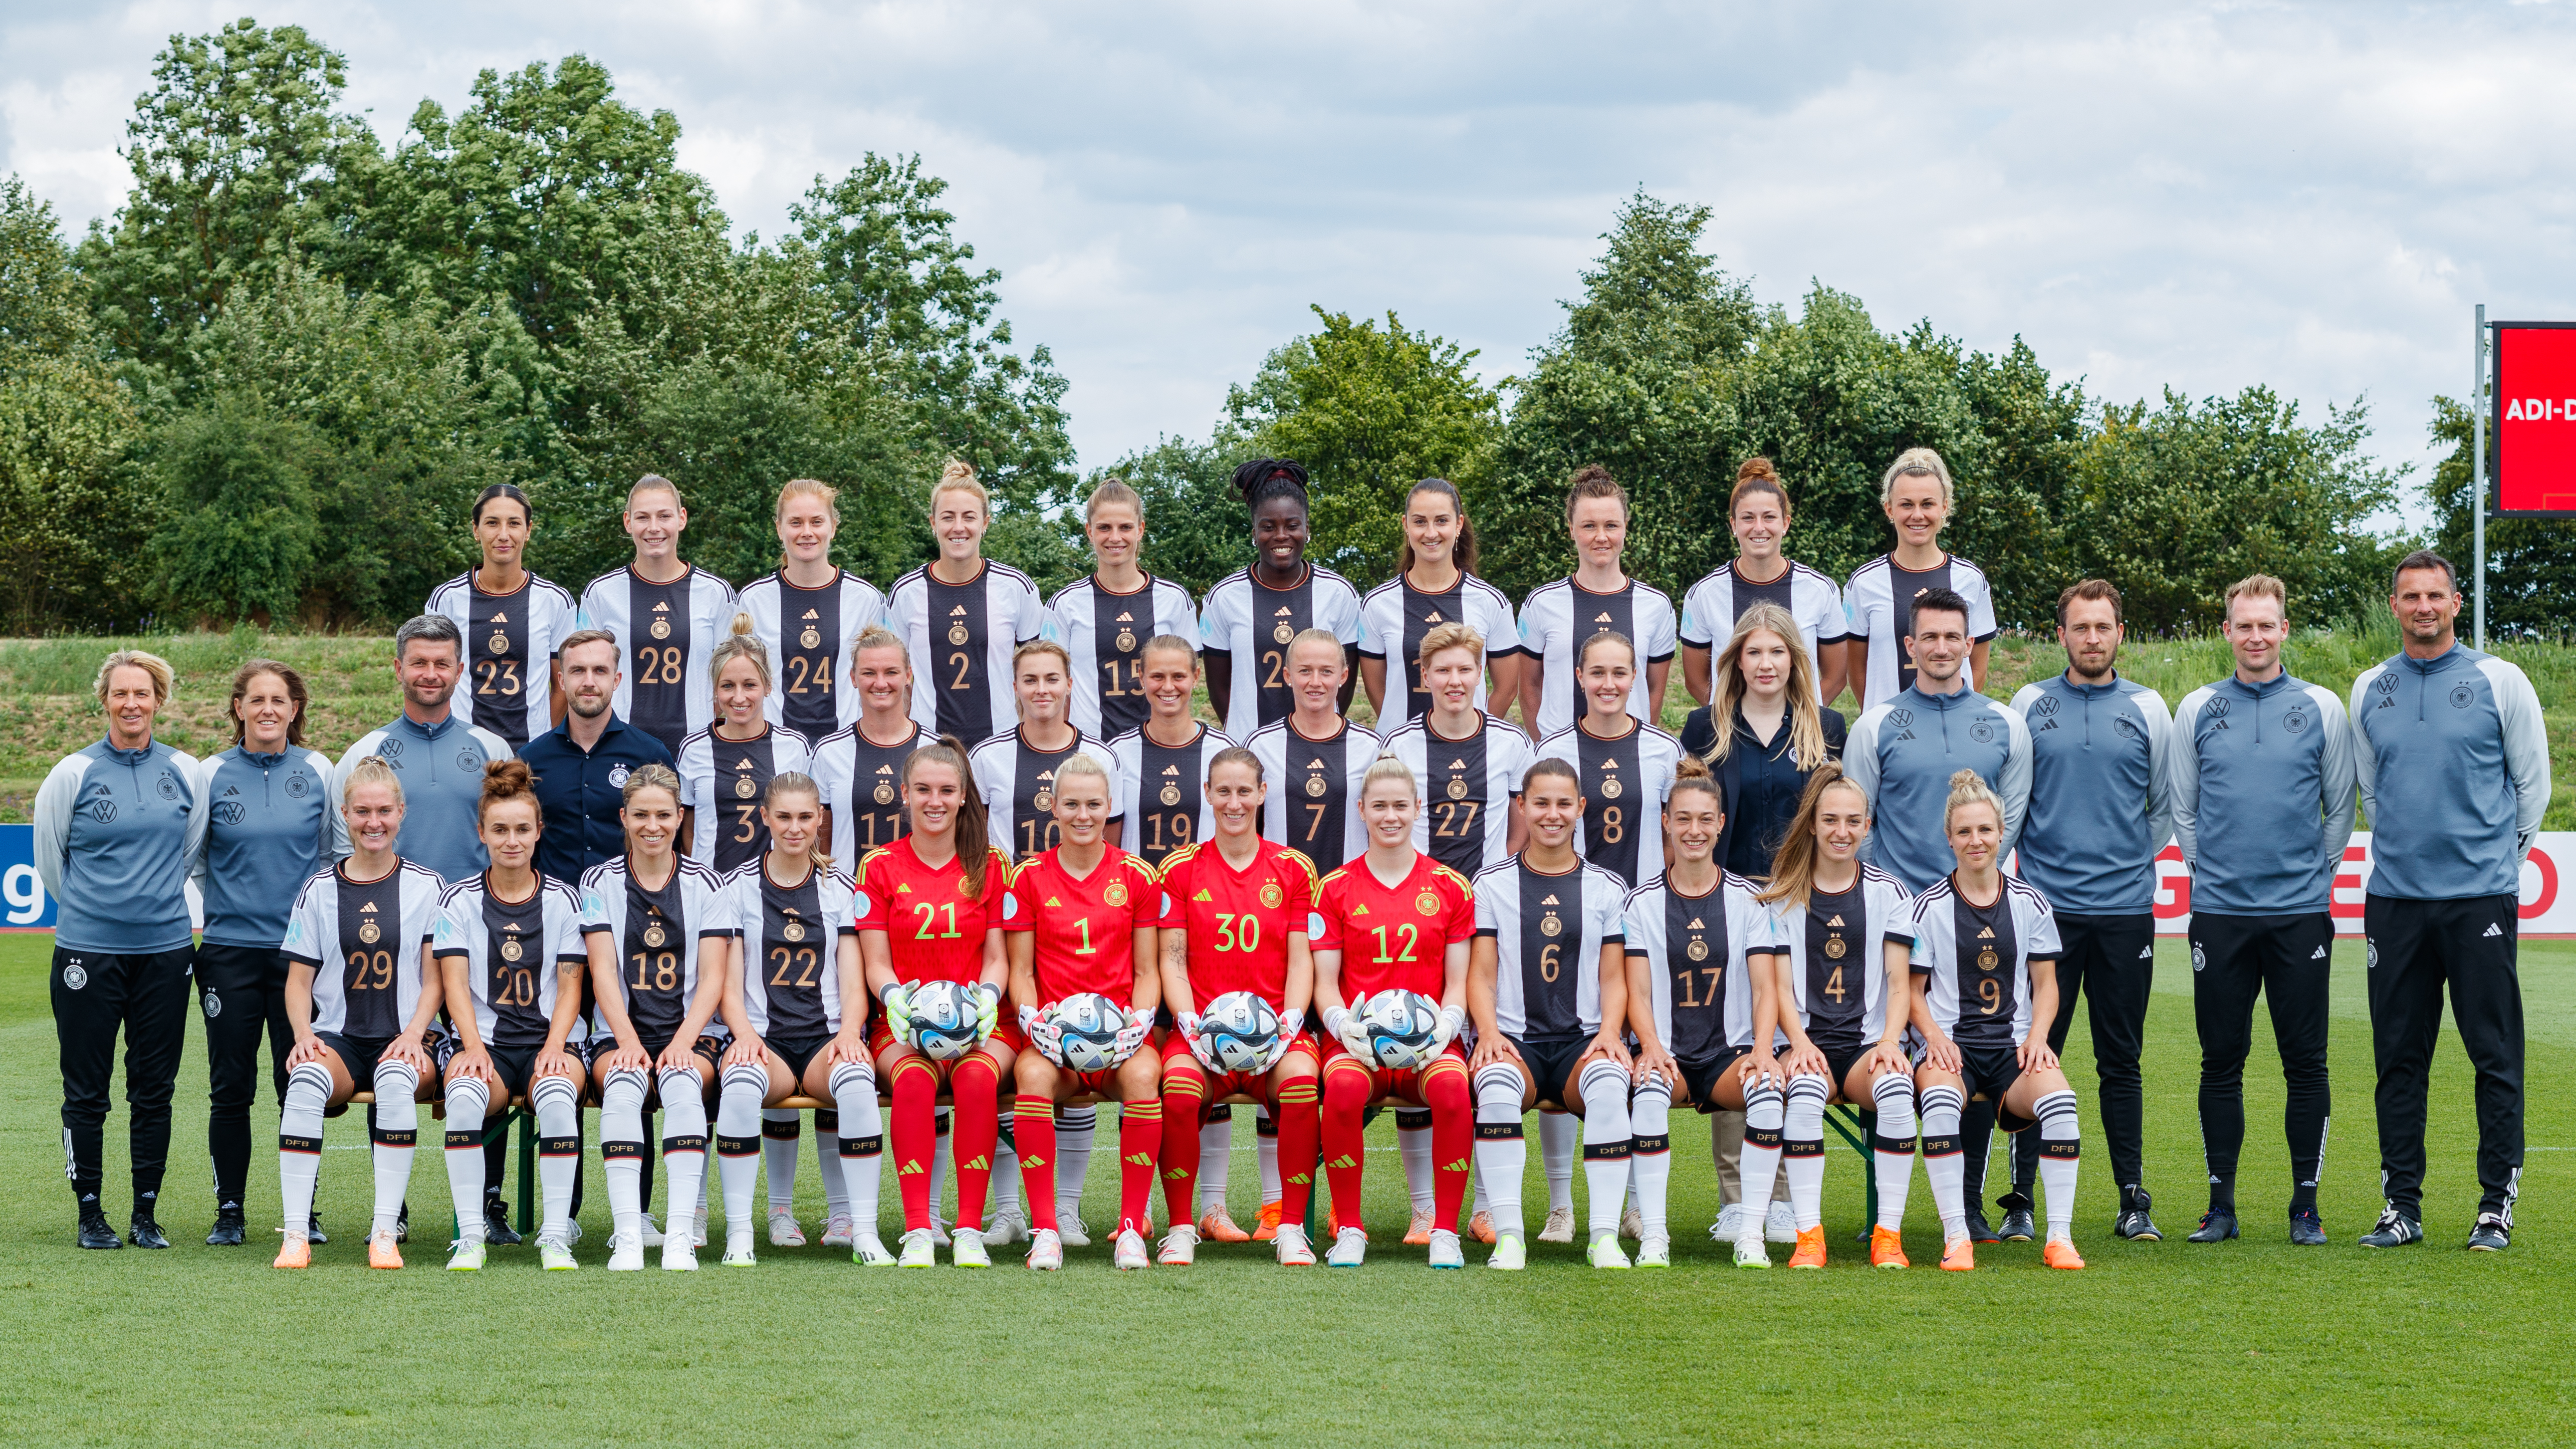 Gruppenfoto der Deutschen Frauen Fußball Nationalmannschaft